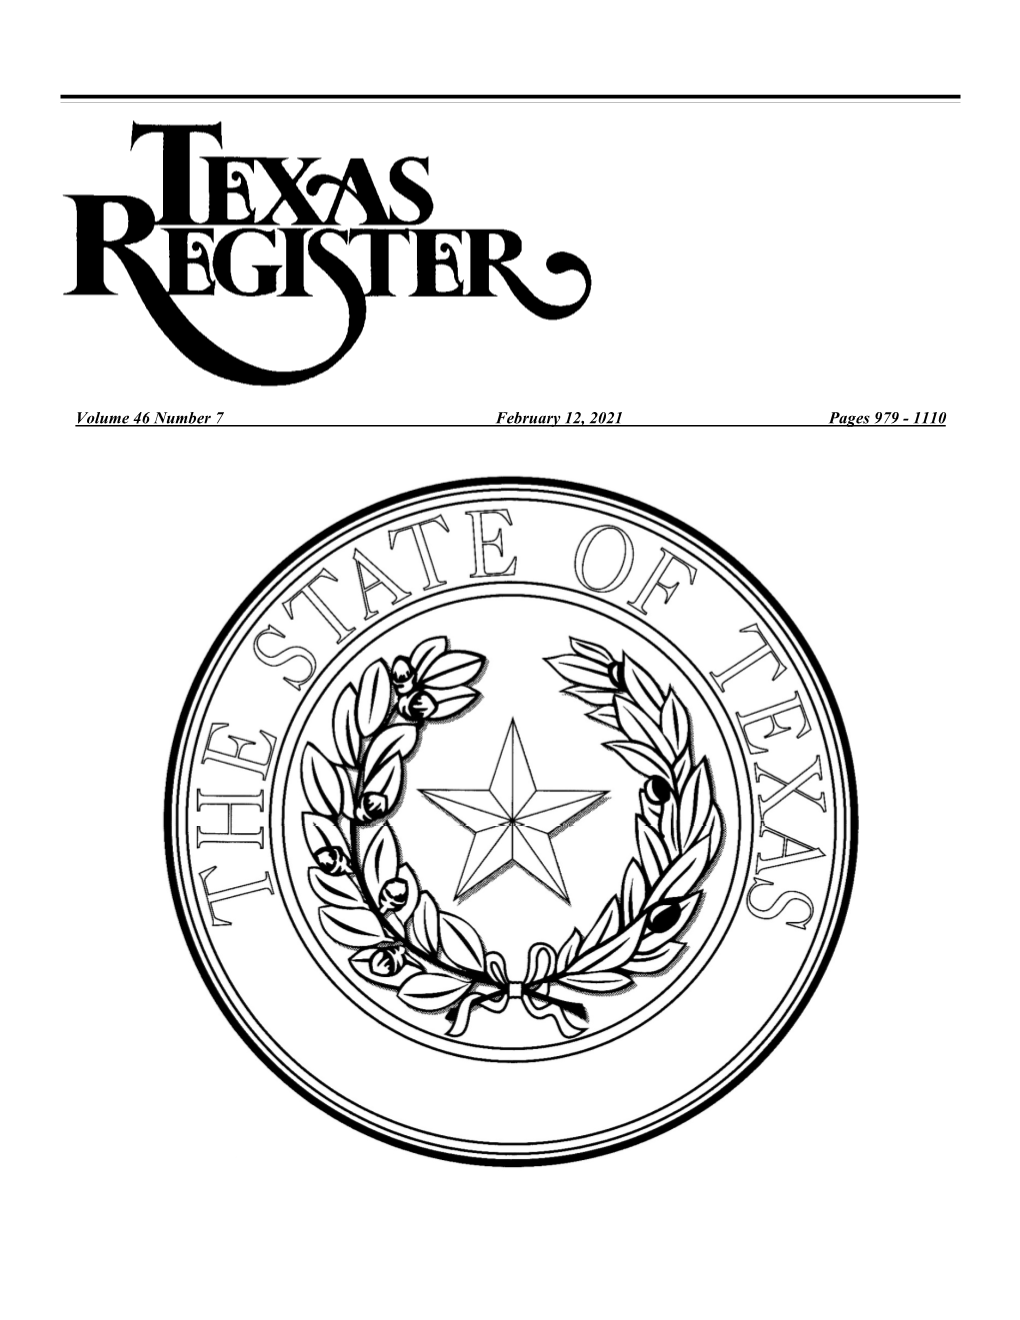 Texas Register February 12, 2021 Issue